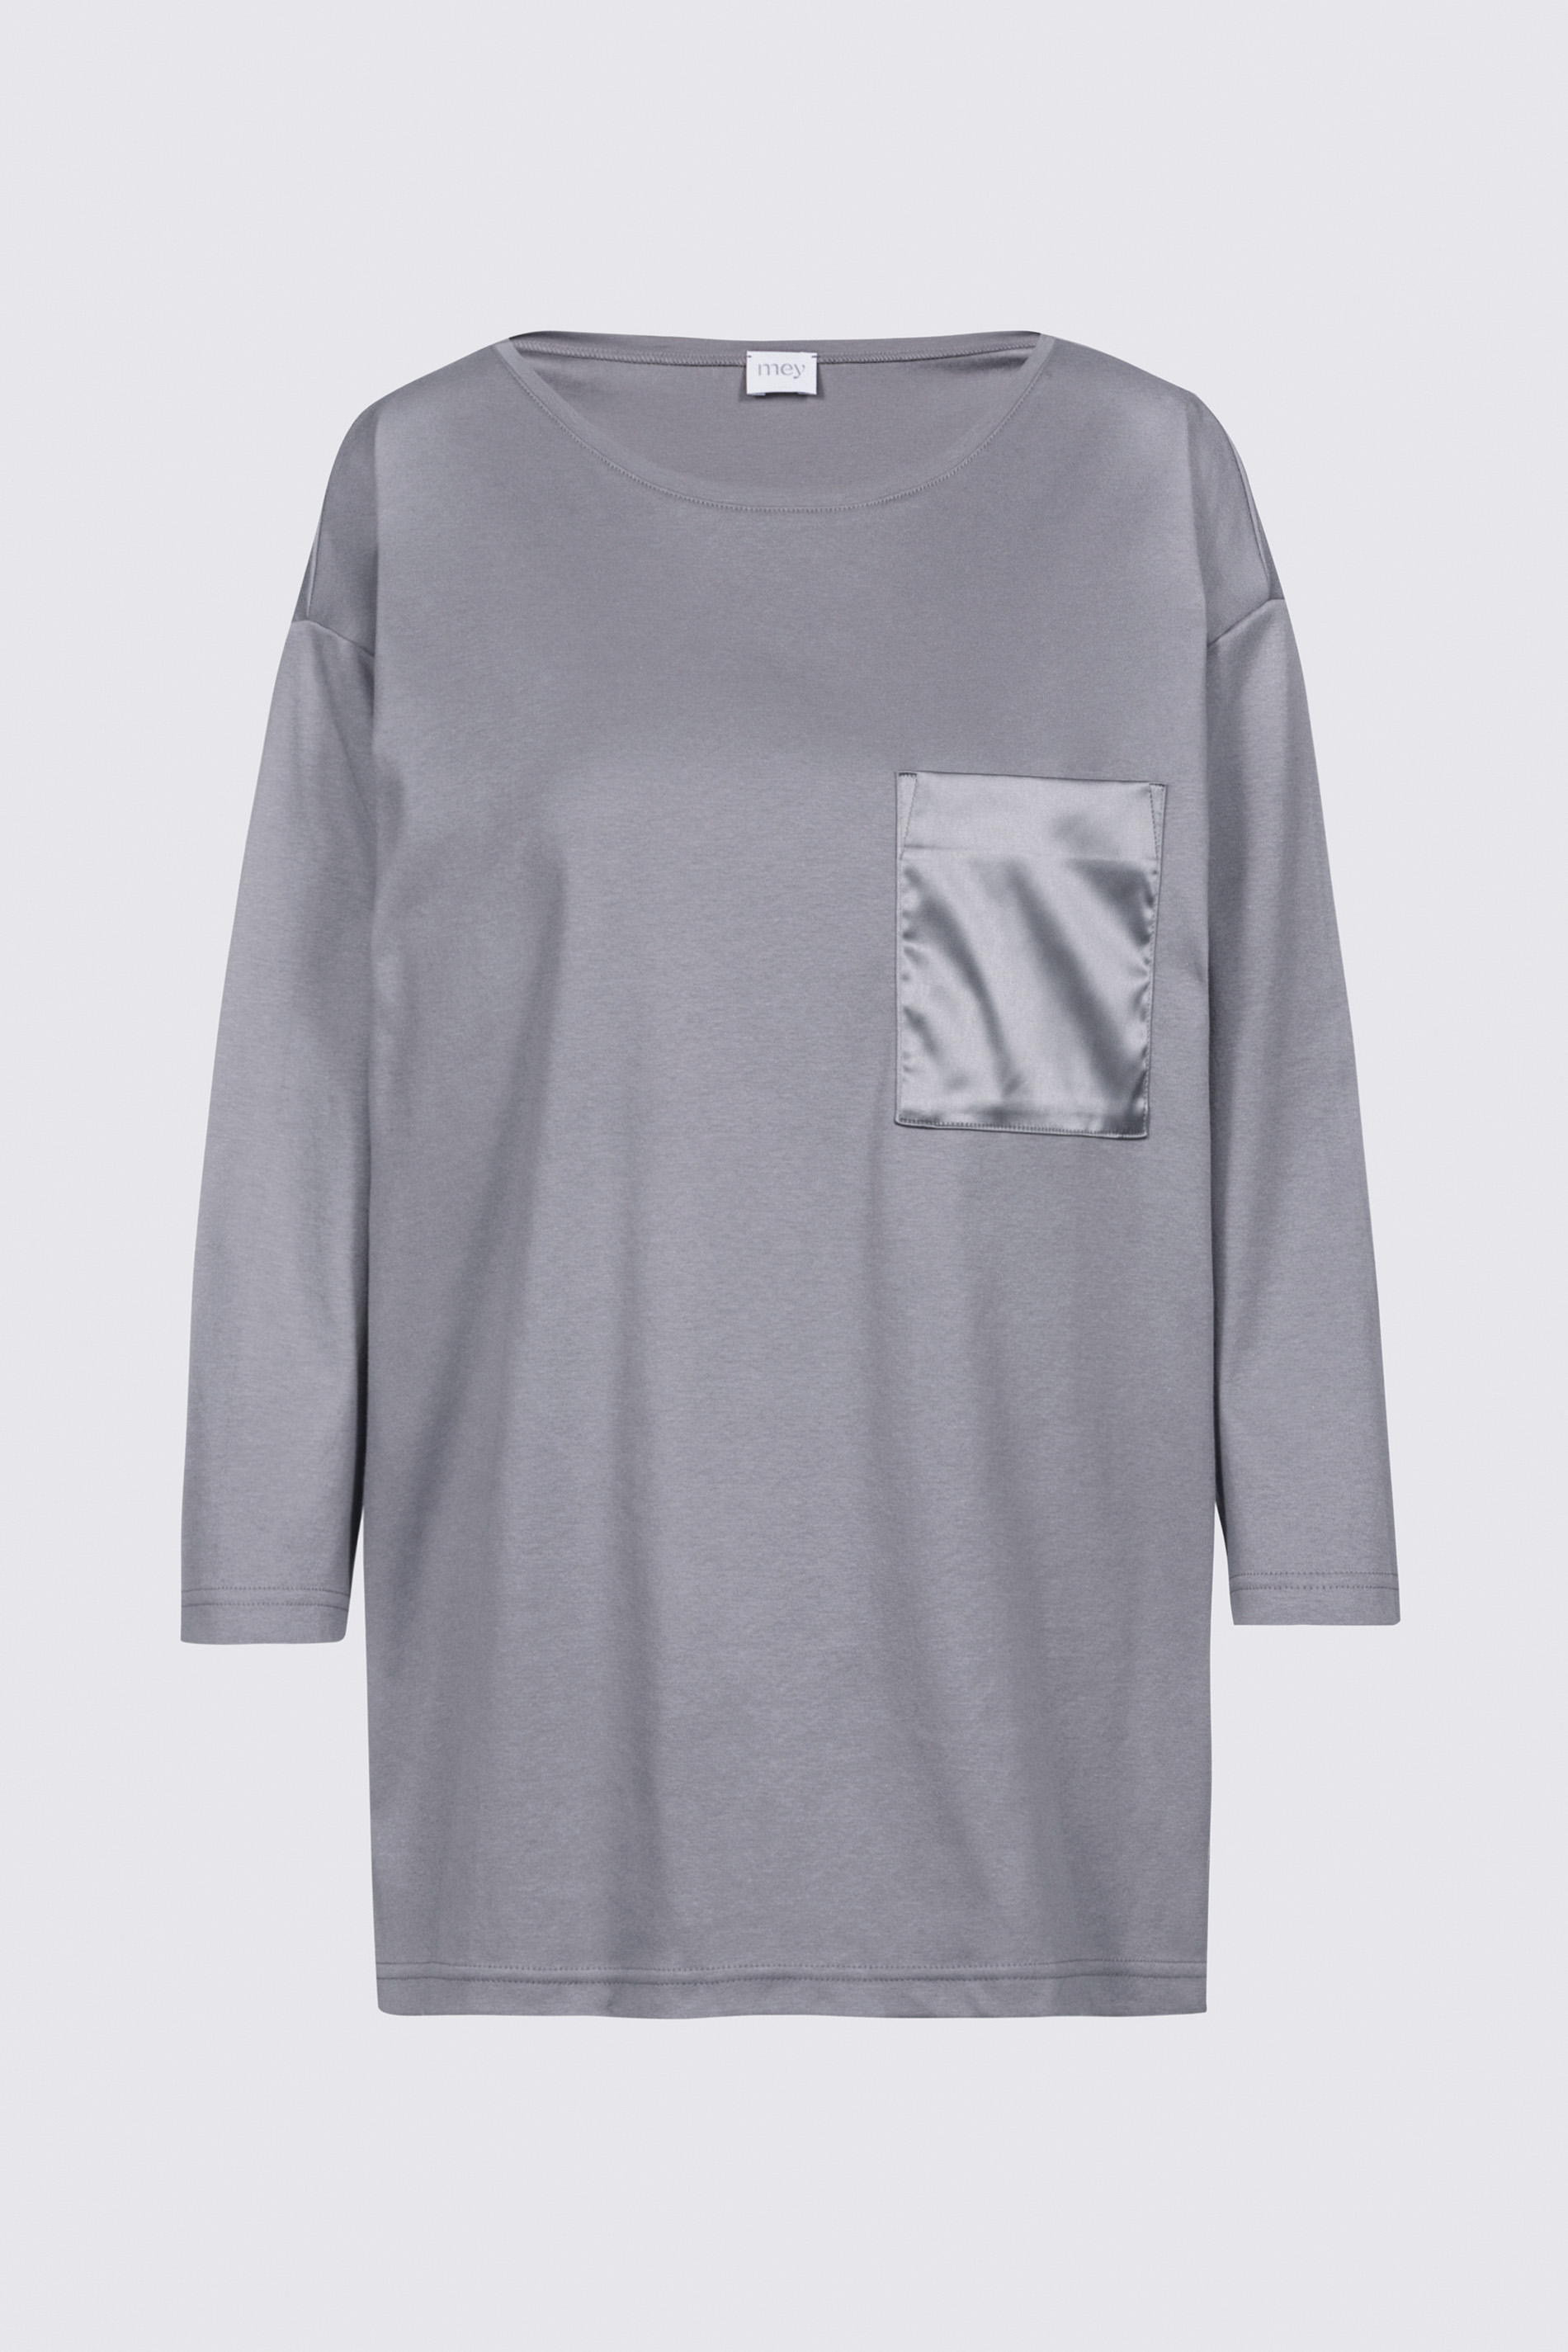 Shirt Lovely Grey Serie Sleepsation Freisteller | mey®